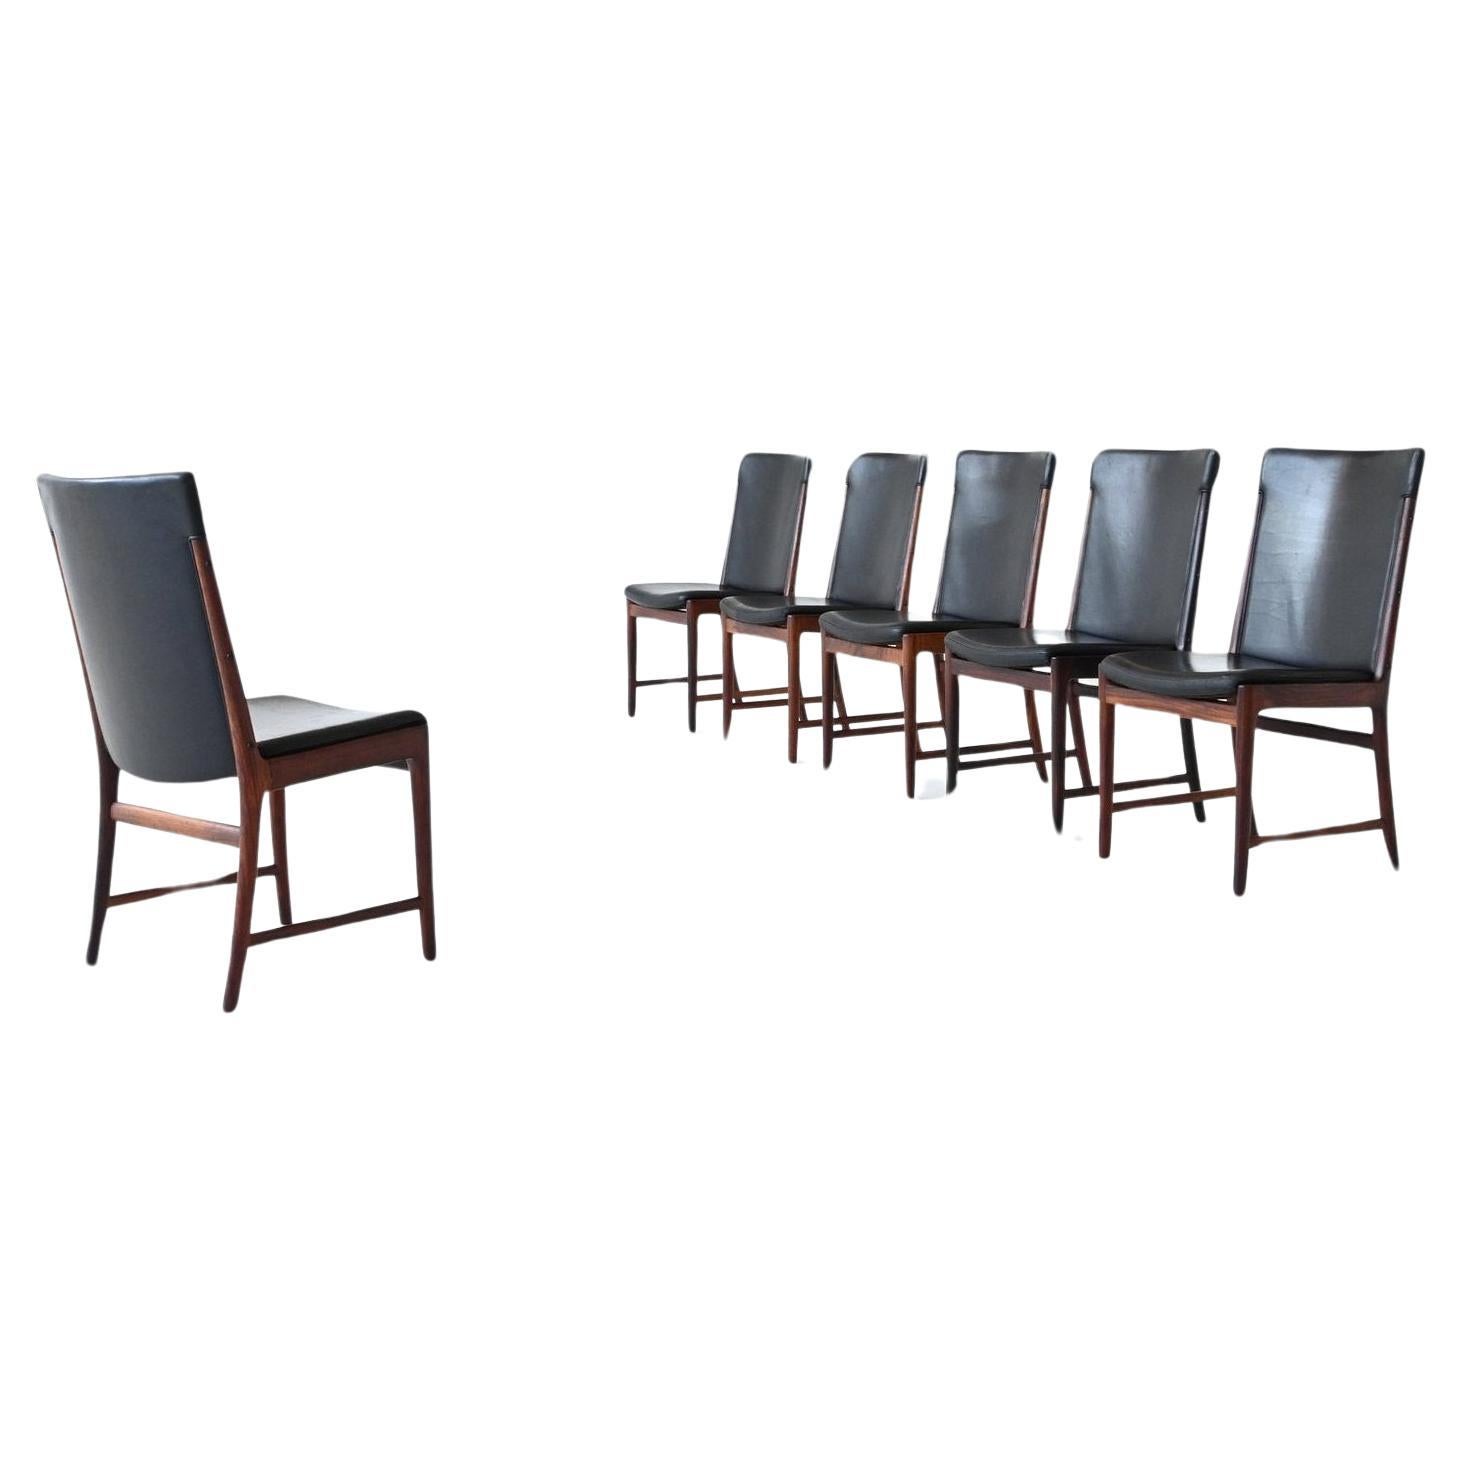 Soren Willadsen Mobelfabrik Dining Room Chairs